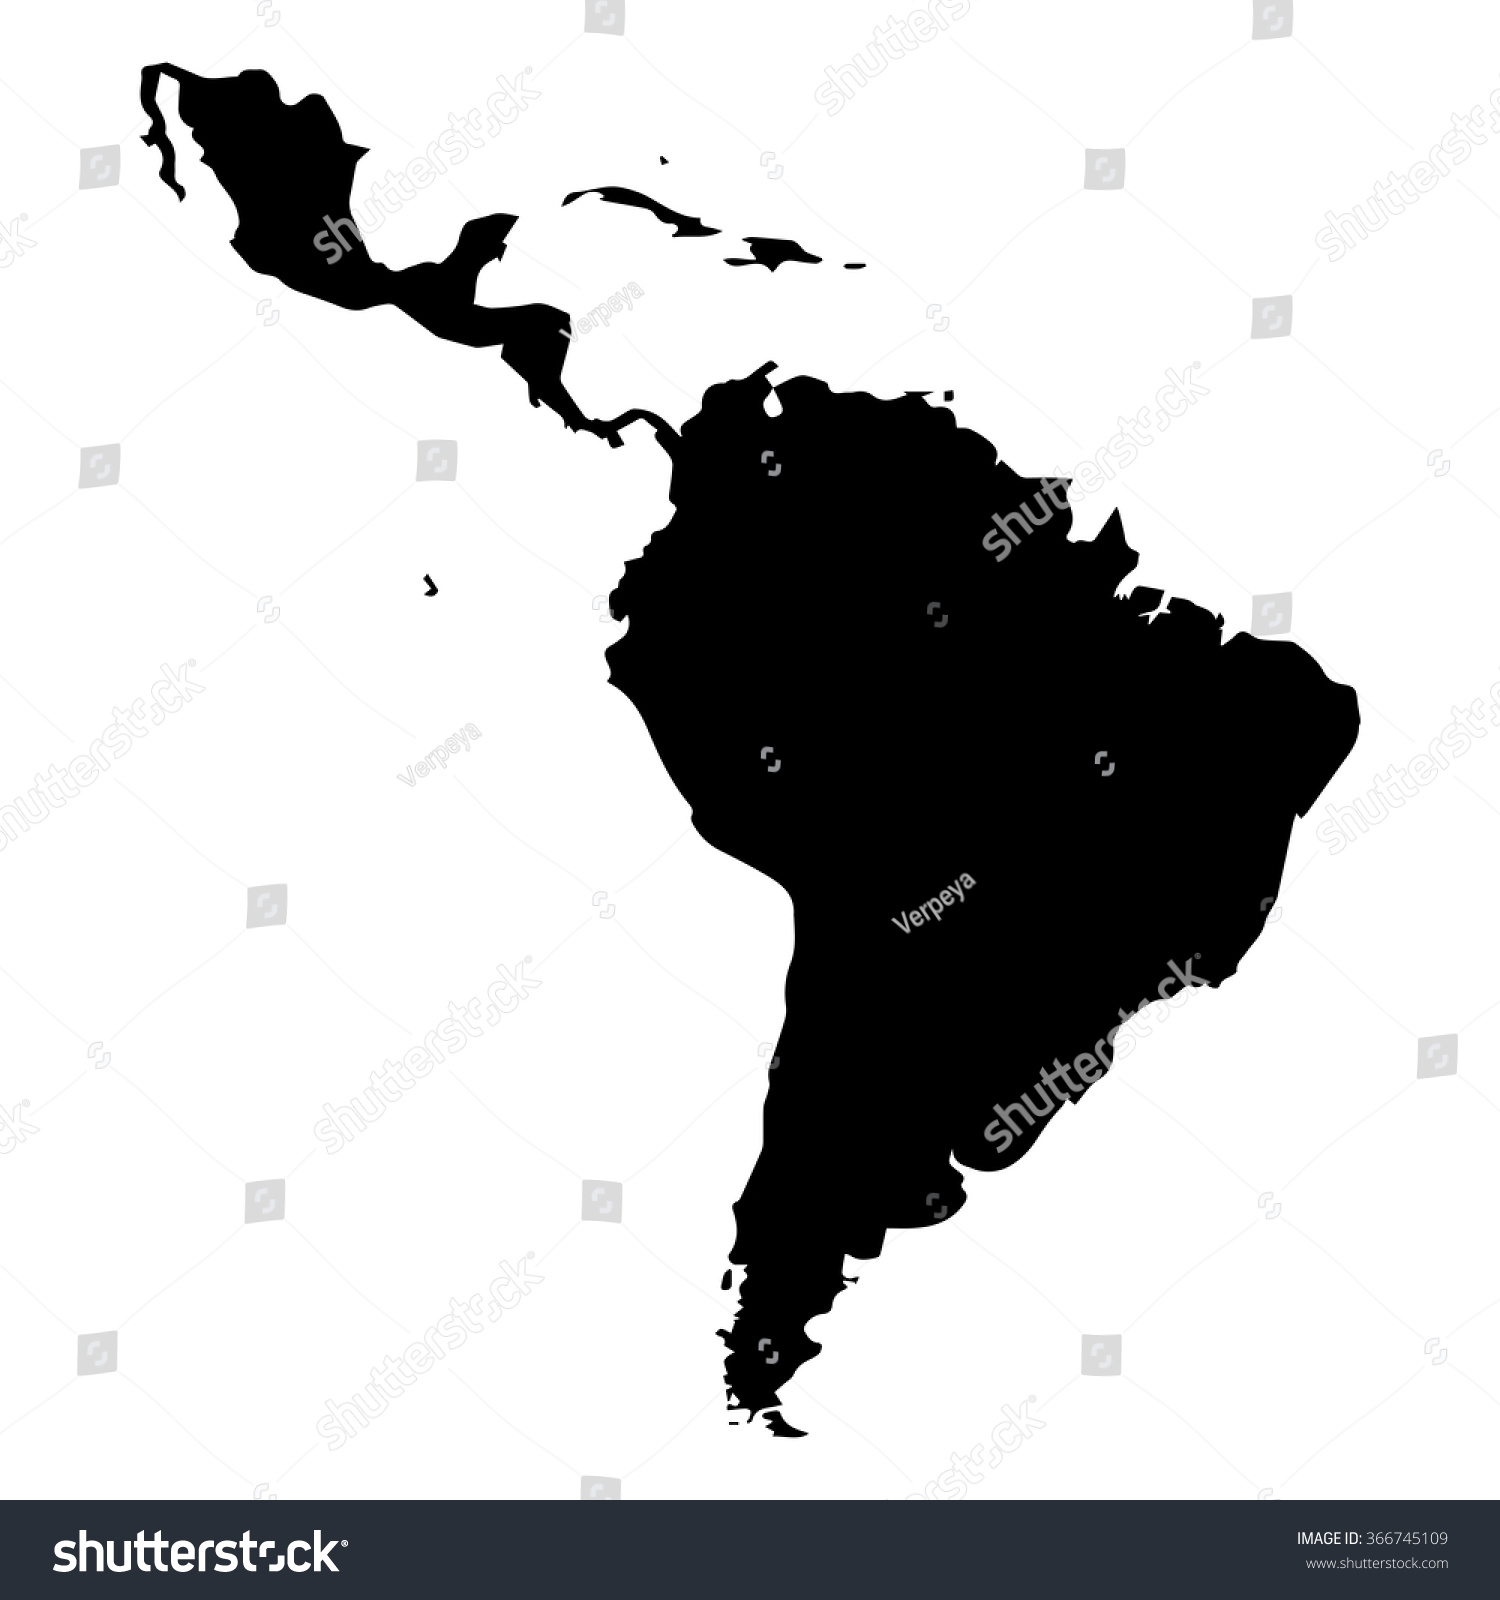 矢量地图。拉丁美洲-教育,其它-海洛创意正版图